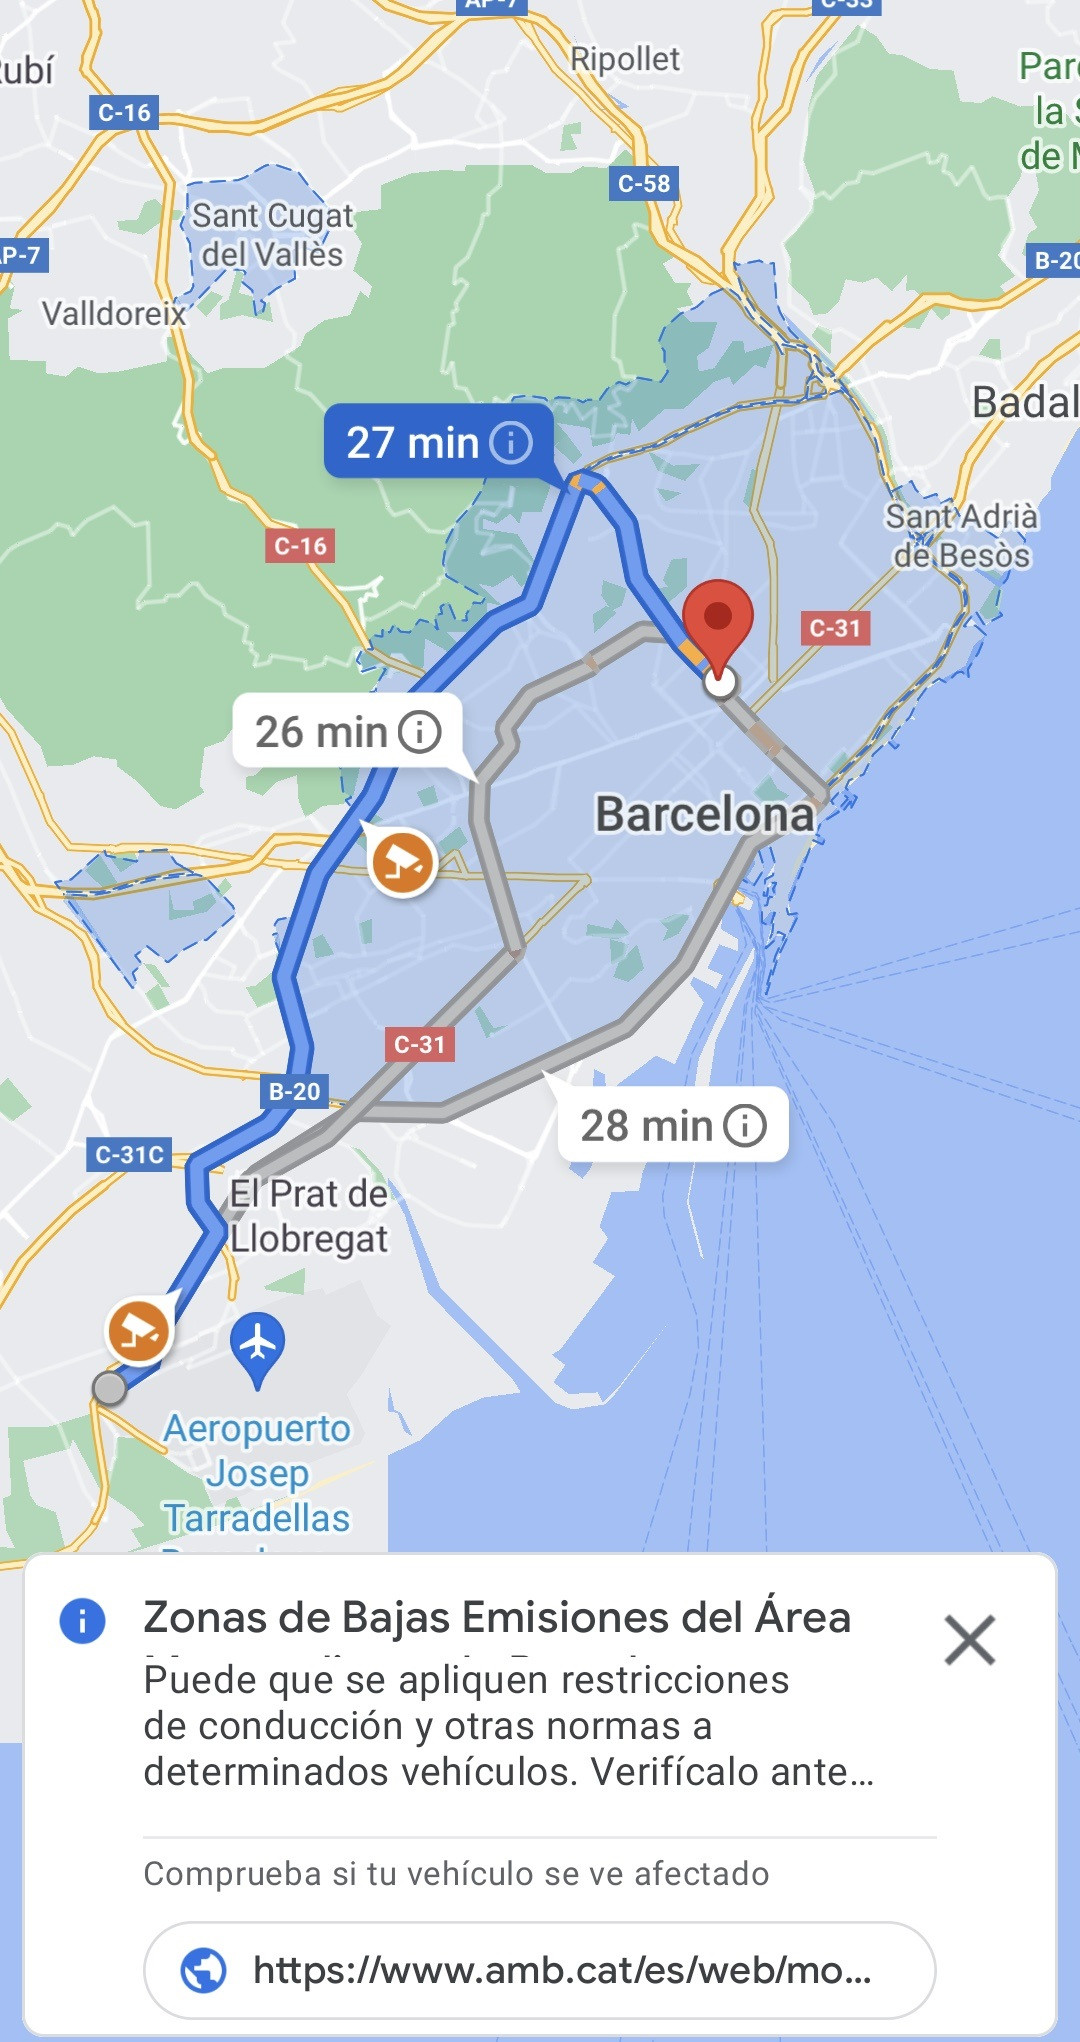 Google Maps visualiza las Zonas de Bajas Emisiones del entorno de Barcelona